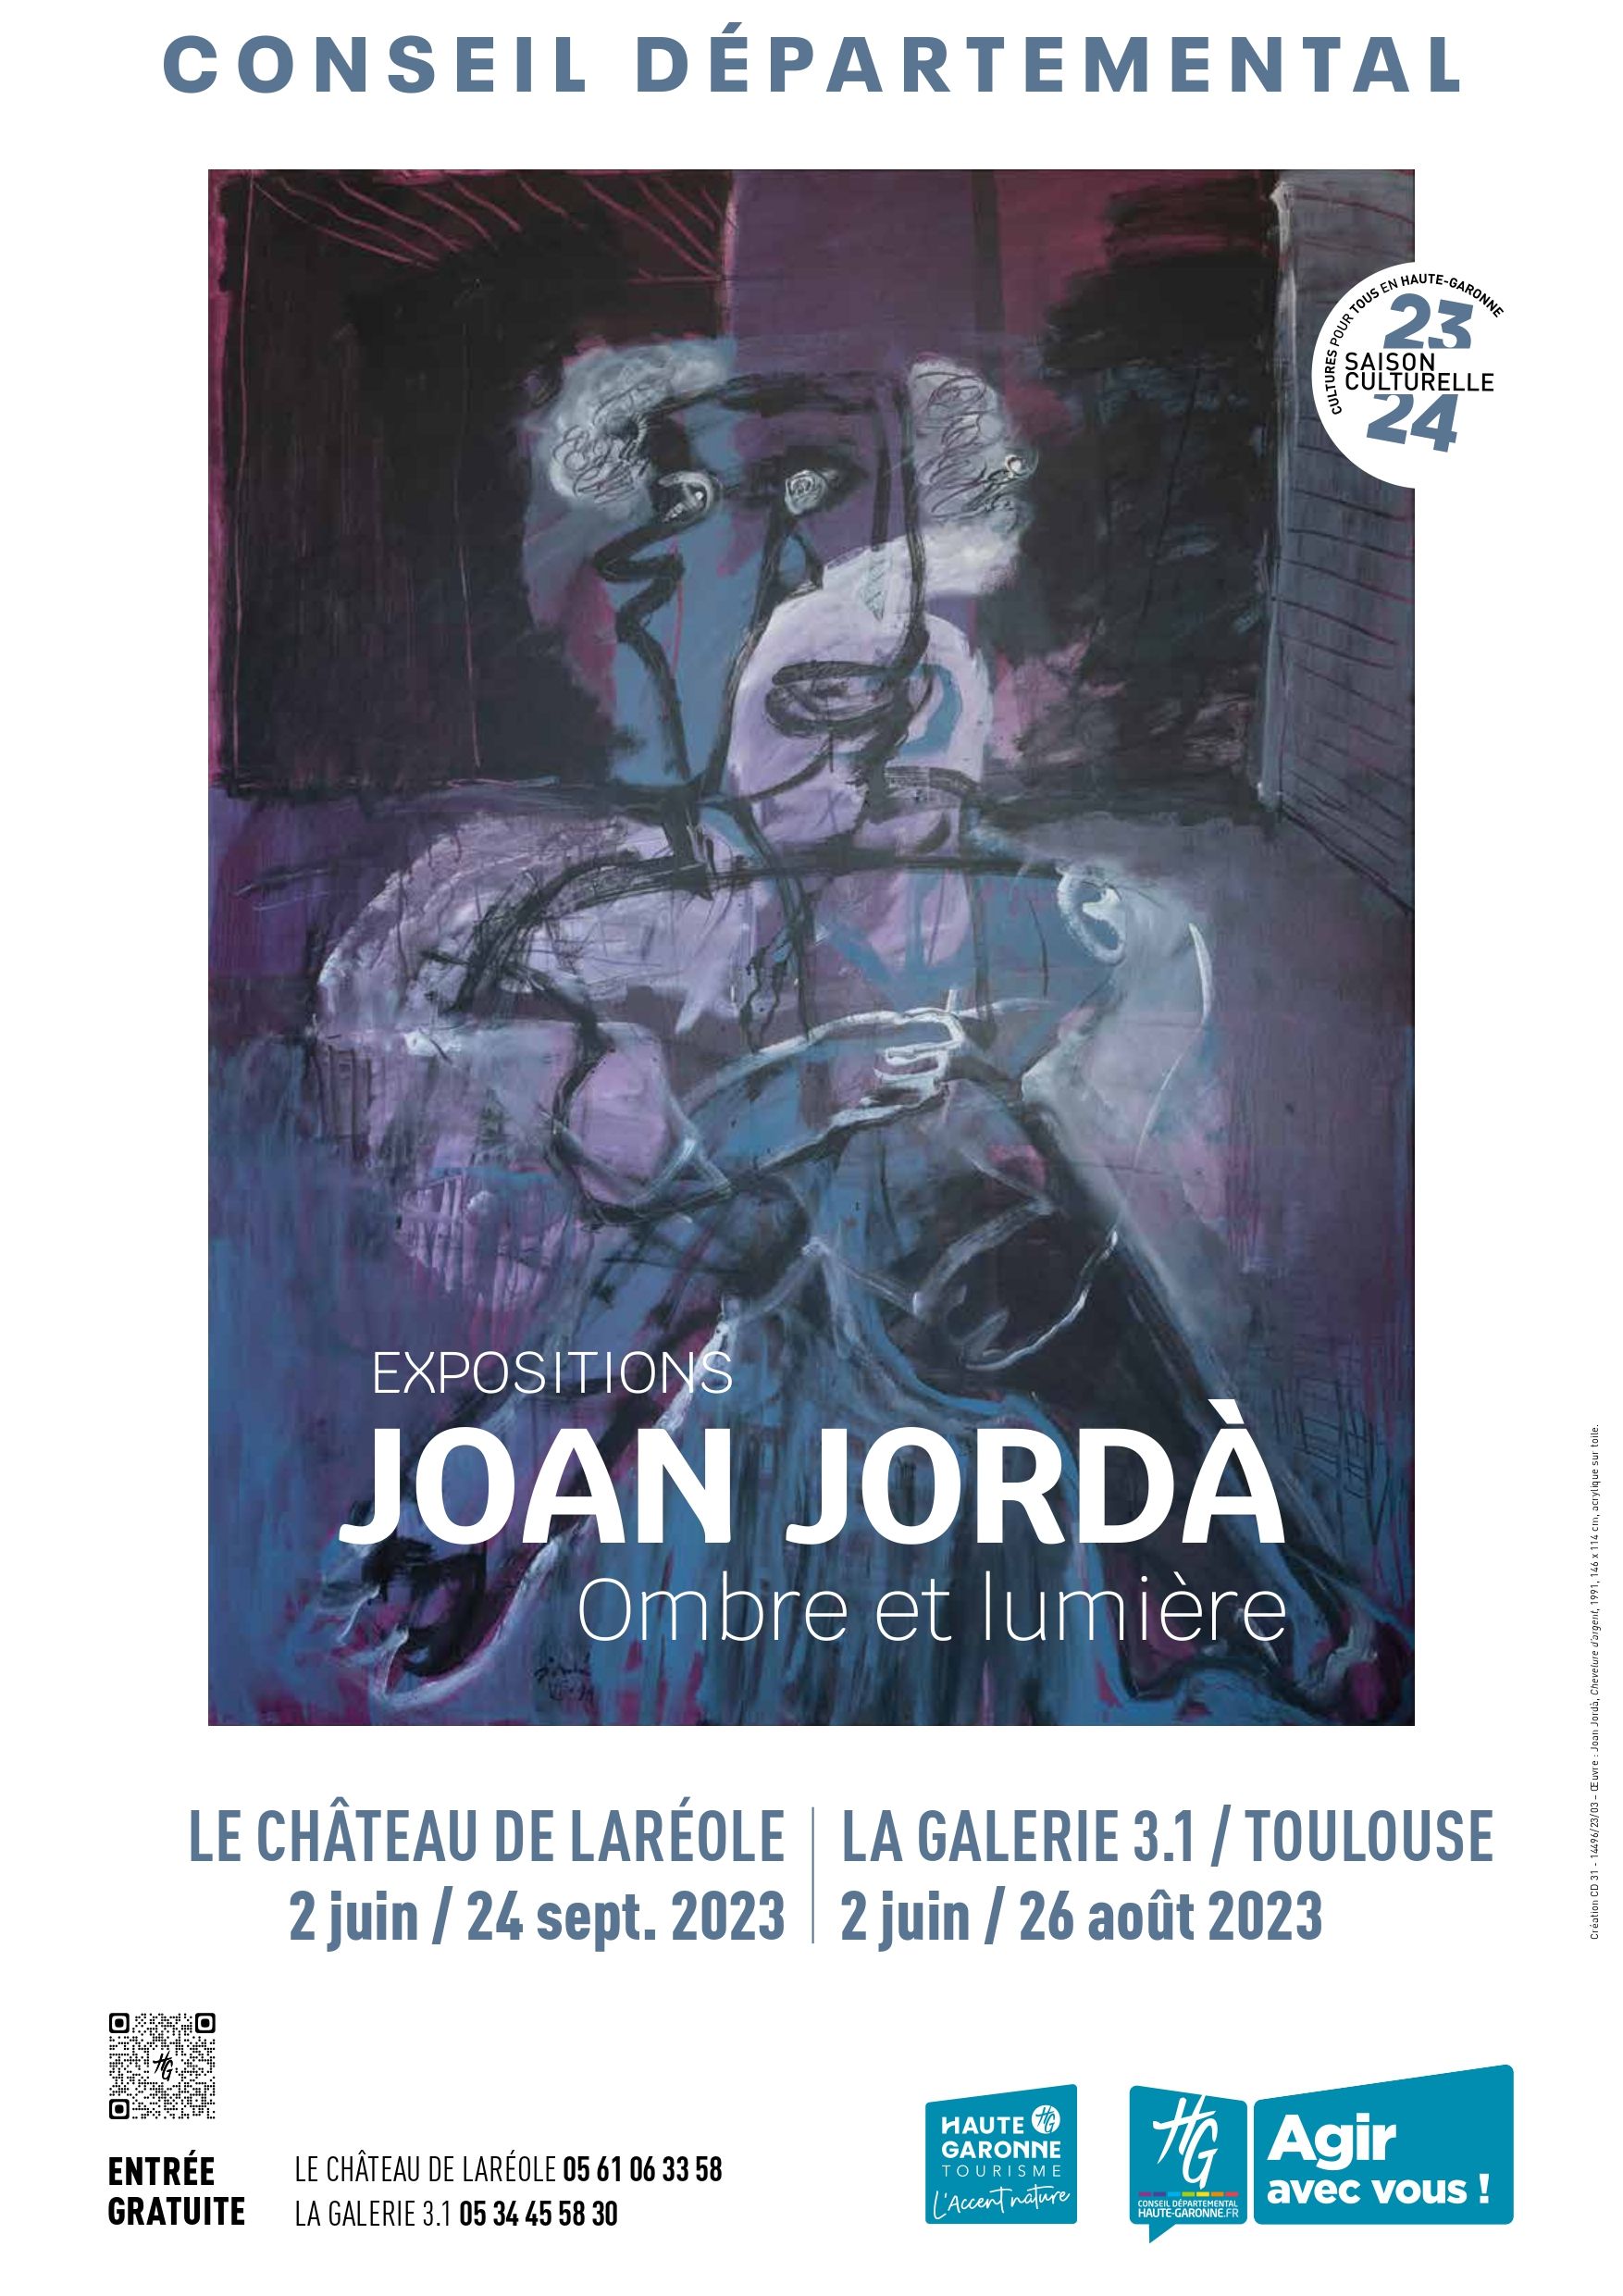 Conseil Départemental de la Haute-Garonne - Exposition Joan Jorda